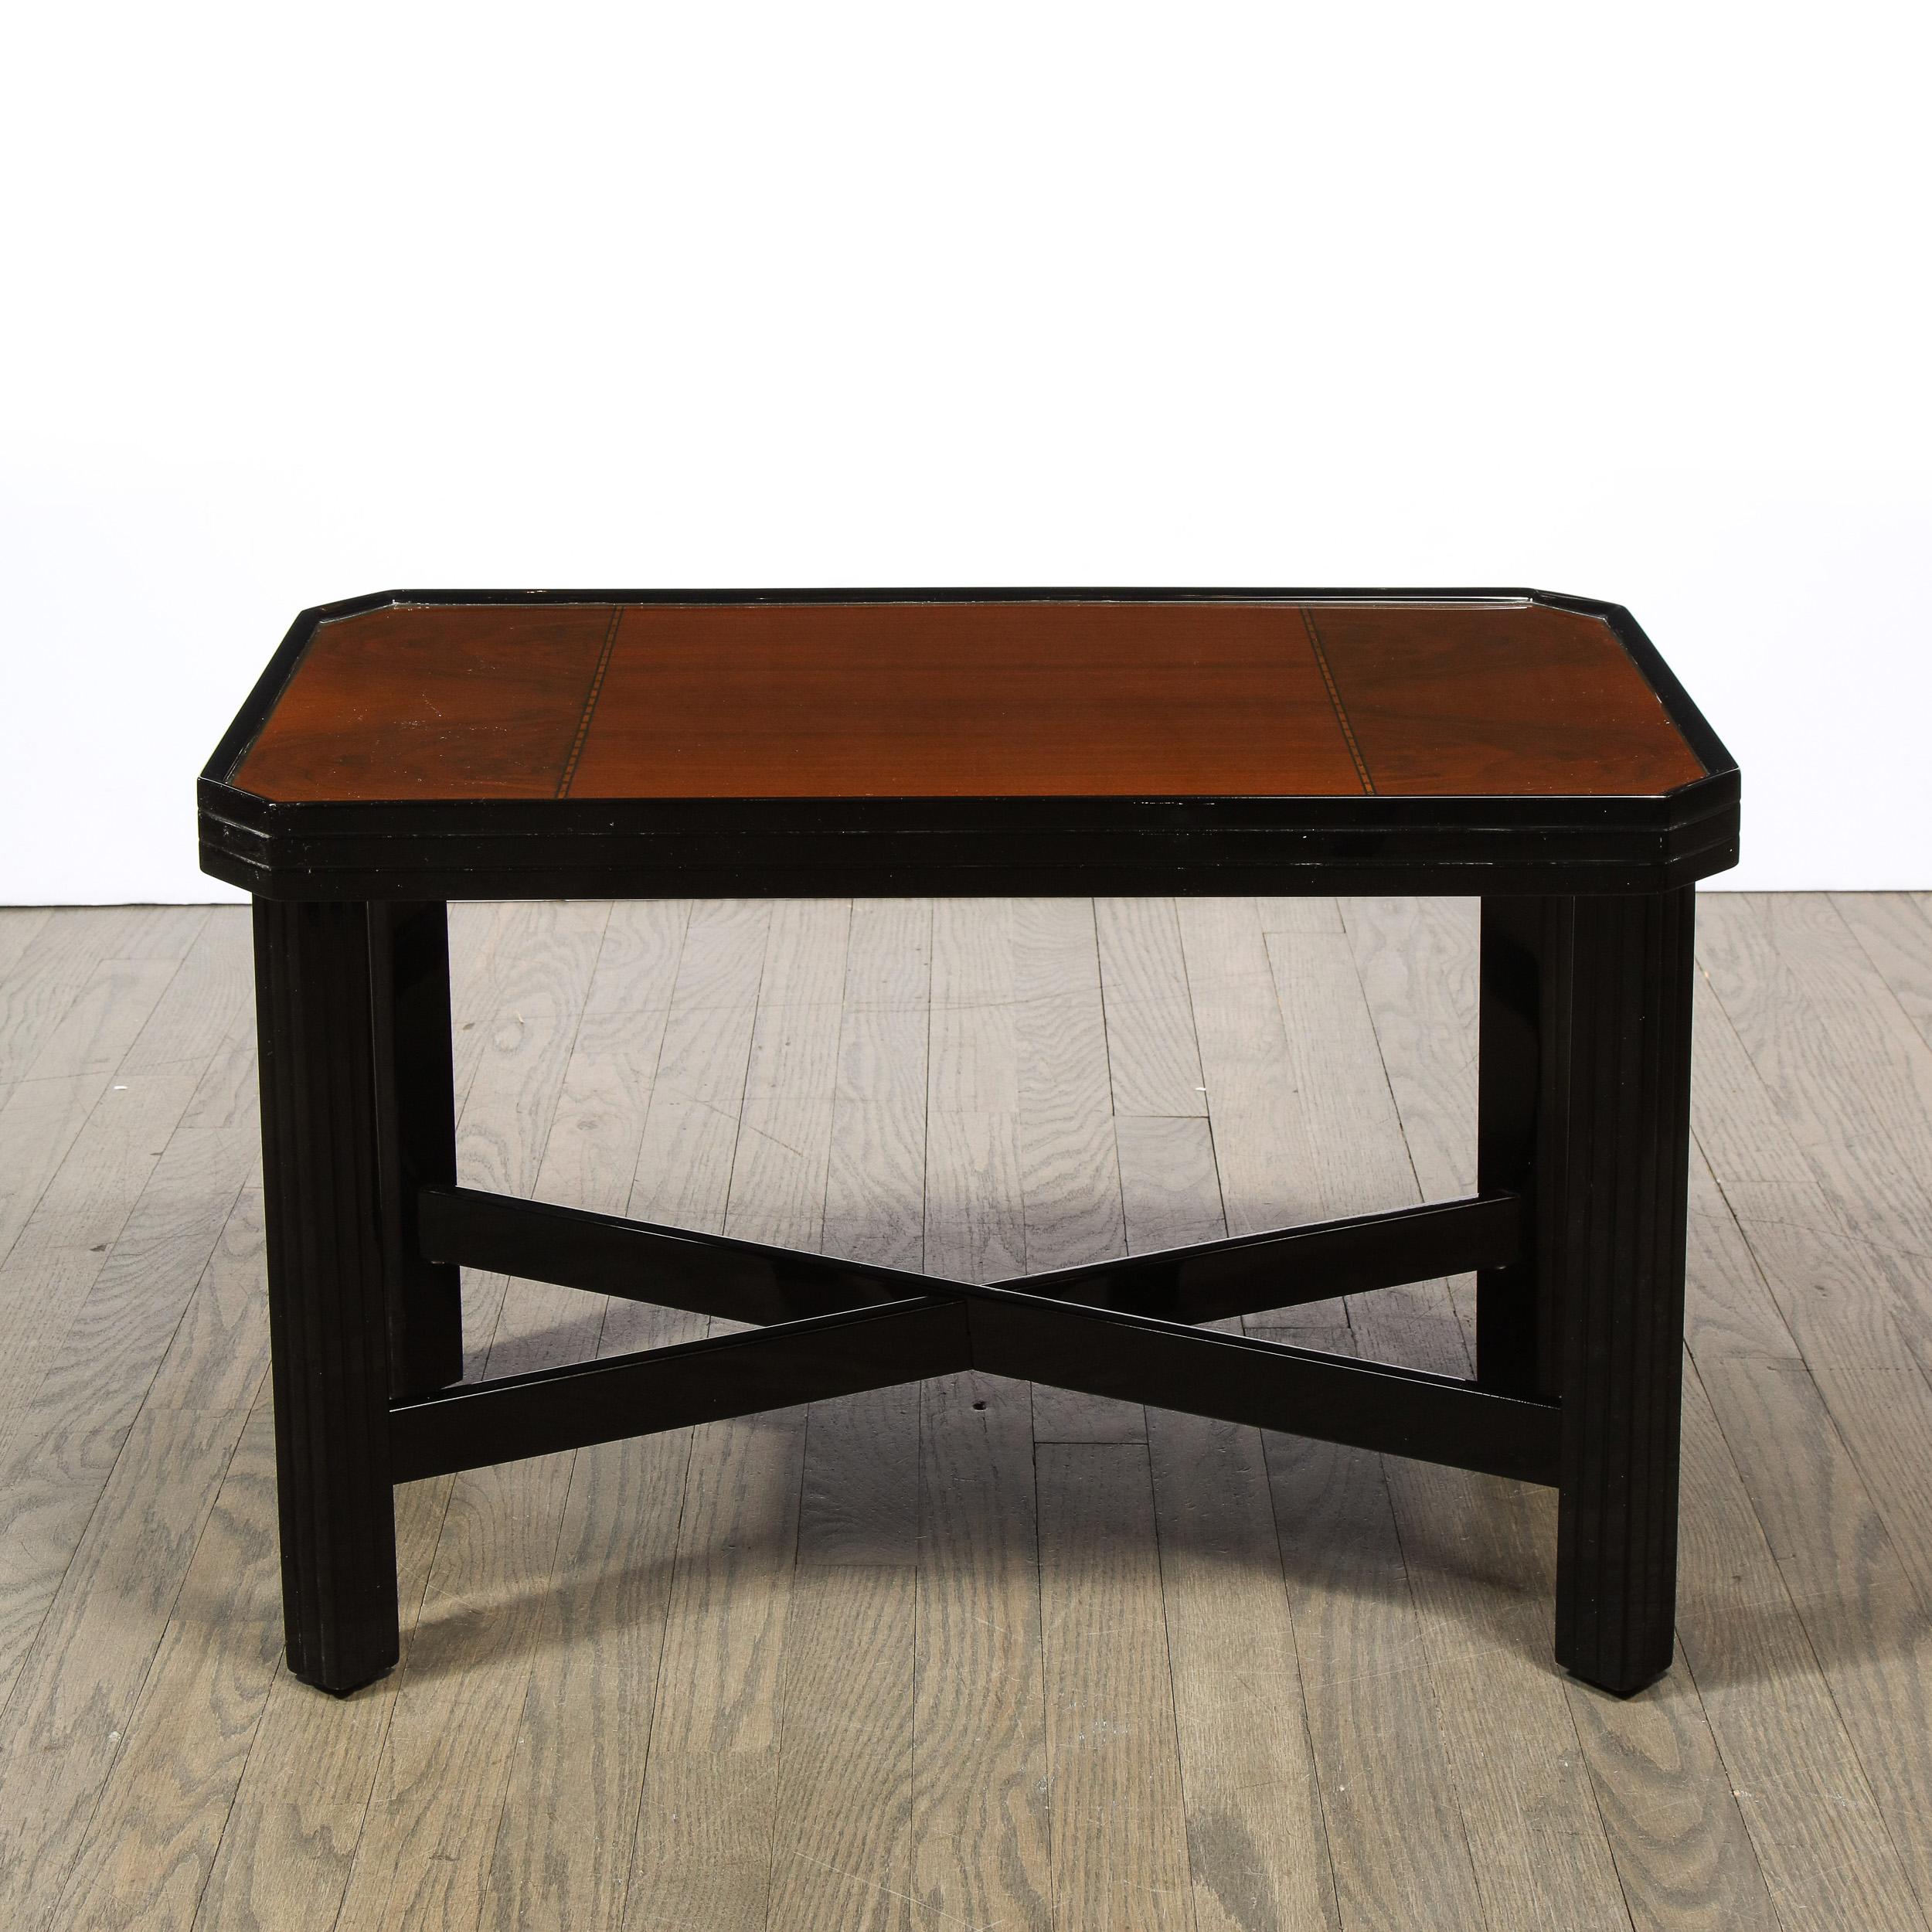 Dieser elegante Art-Déco-Tisch aus dem Maschinenzeitalter wurde um 1935 in den Vereinigten Staaten hergestellt. Die geradlinigen Beine sind durch x-förmige Stützen verbunden - alles in glänzendem schwarzem Lack. Die Tischplatte besteht aus einem